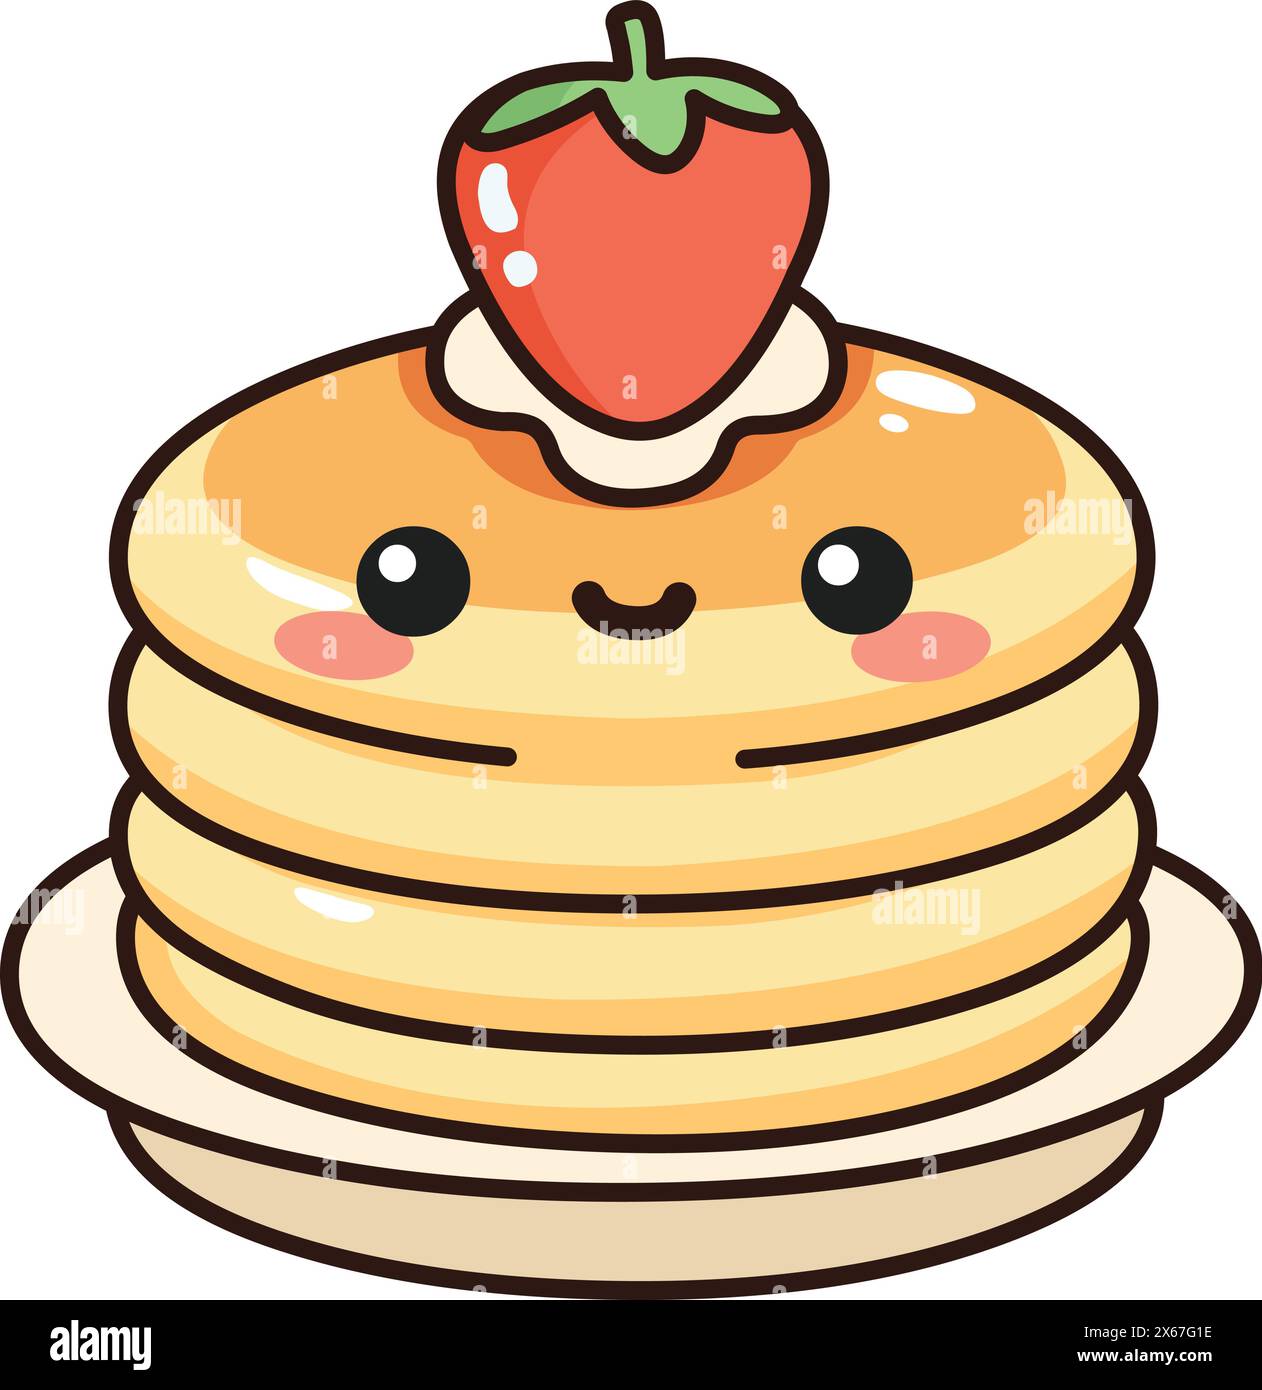 Pile de crêpes joyeuses avec des fraises et de la crème sur le dessus, dans un style kawaii Illustration de Vecteur